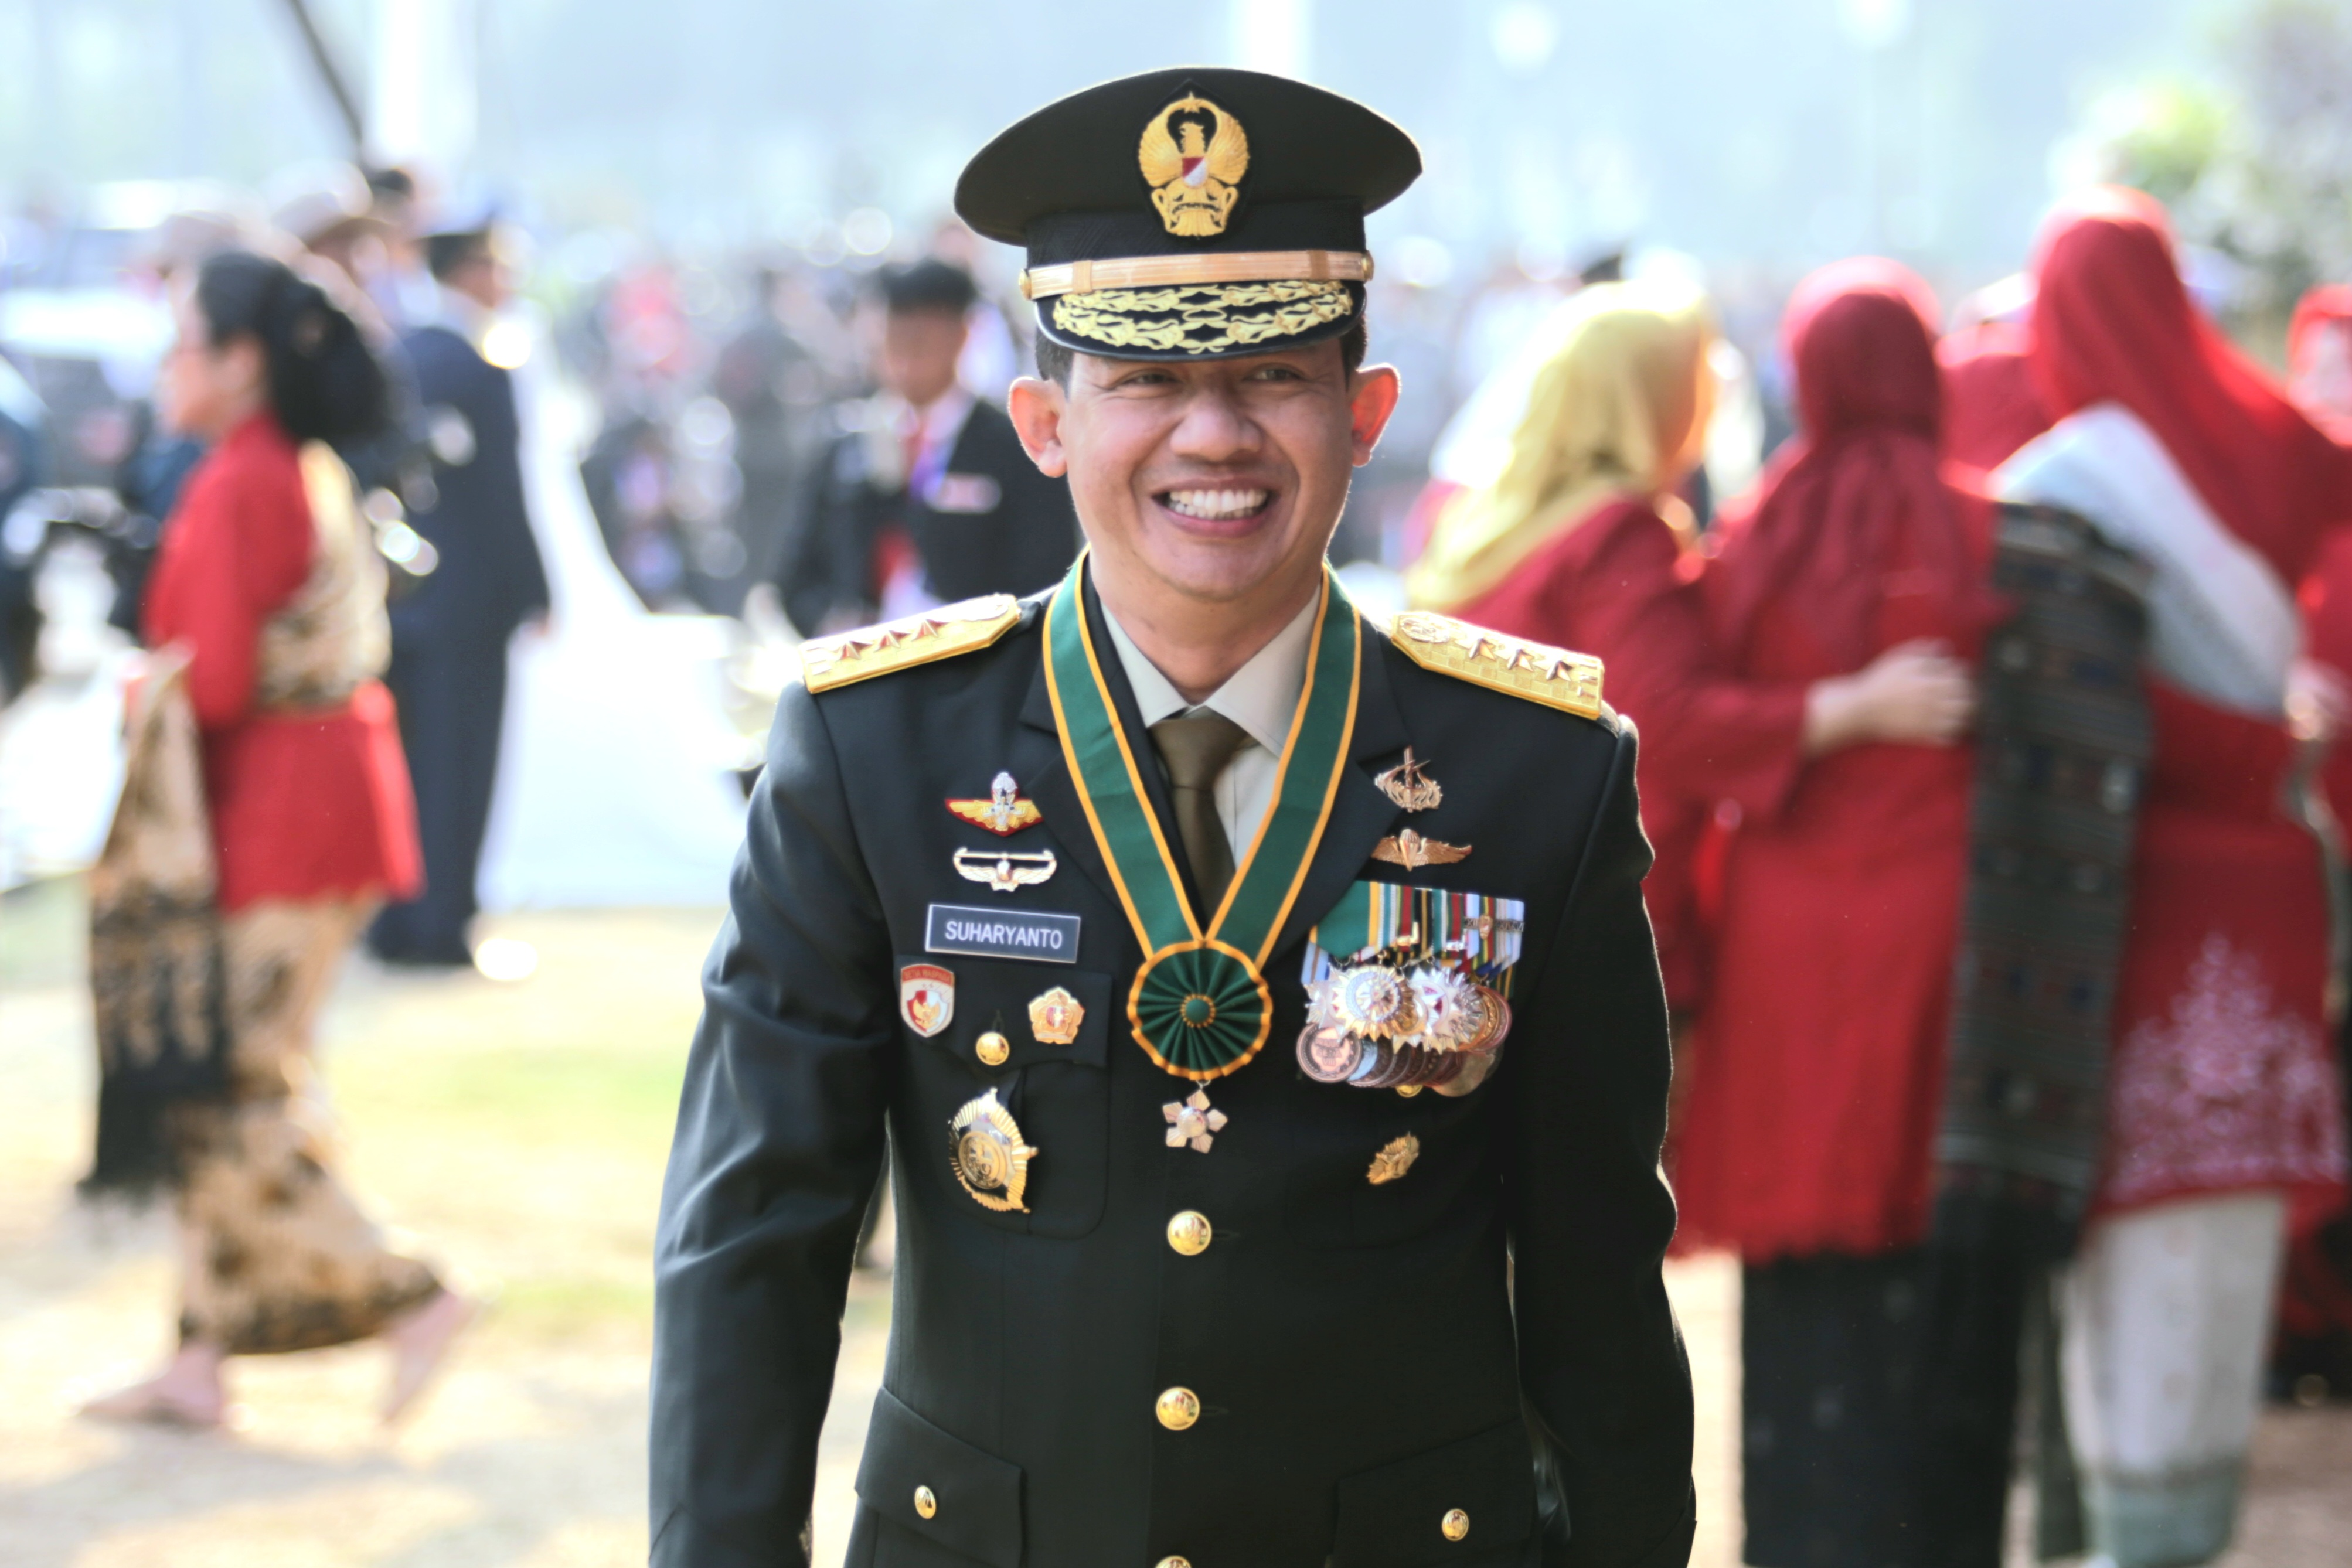 Kepala BNPB Letjen TNI Suharyanto, S.Sos., M.M. menghadiri upacara peringatan Hari Ulang Tahun (HUT) ke-78 Tentara Nasional Indonesia (TNI) yang dihelat di Monumen Nasional, Jakarta, Kamis (5/10). 